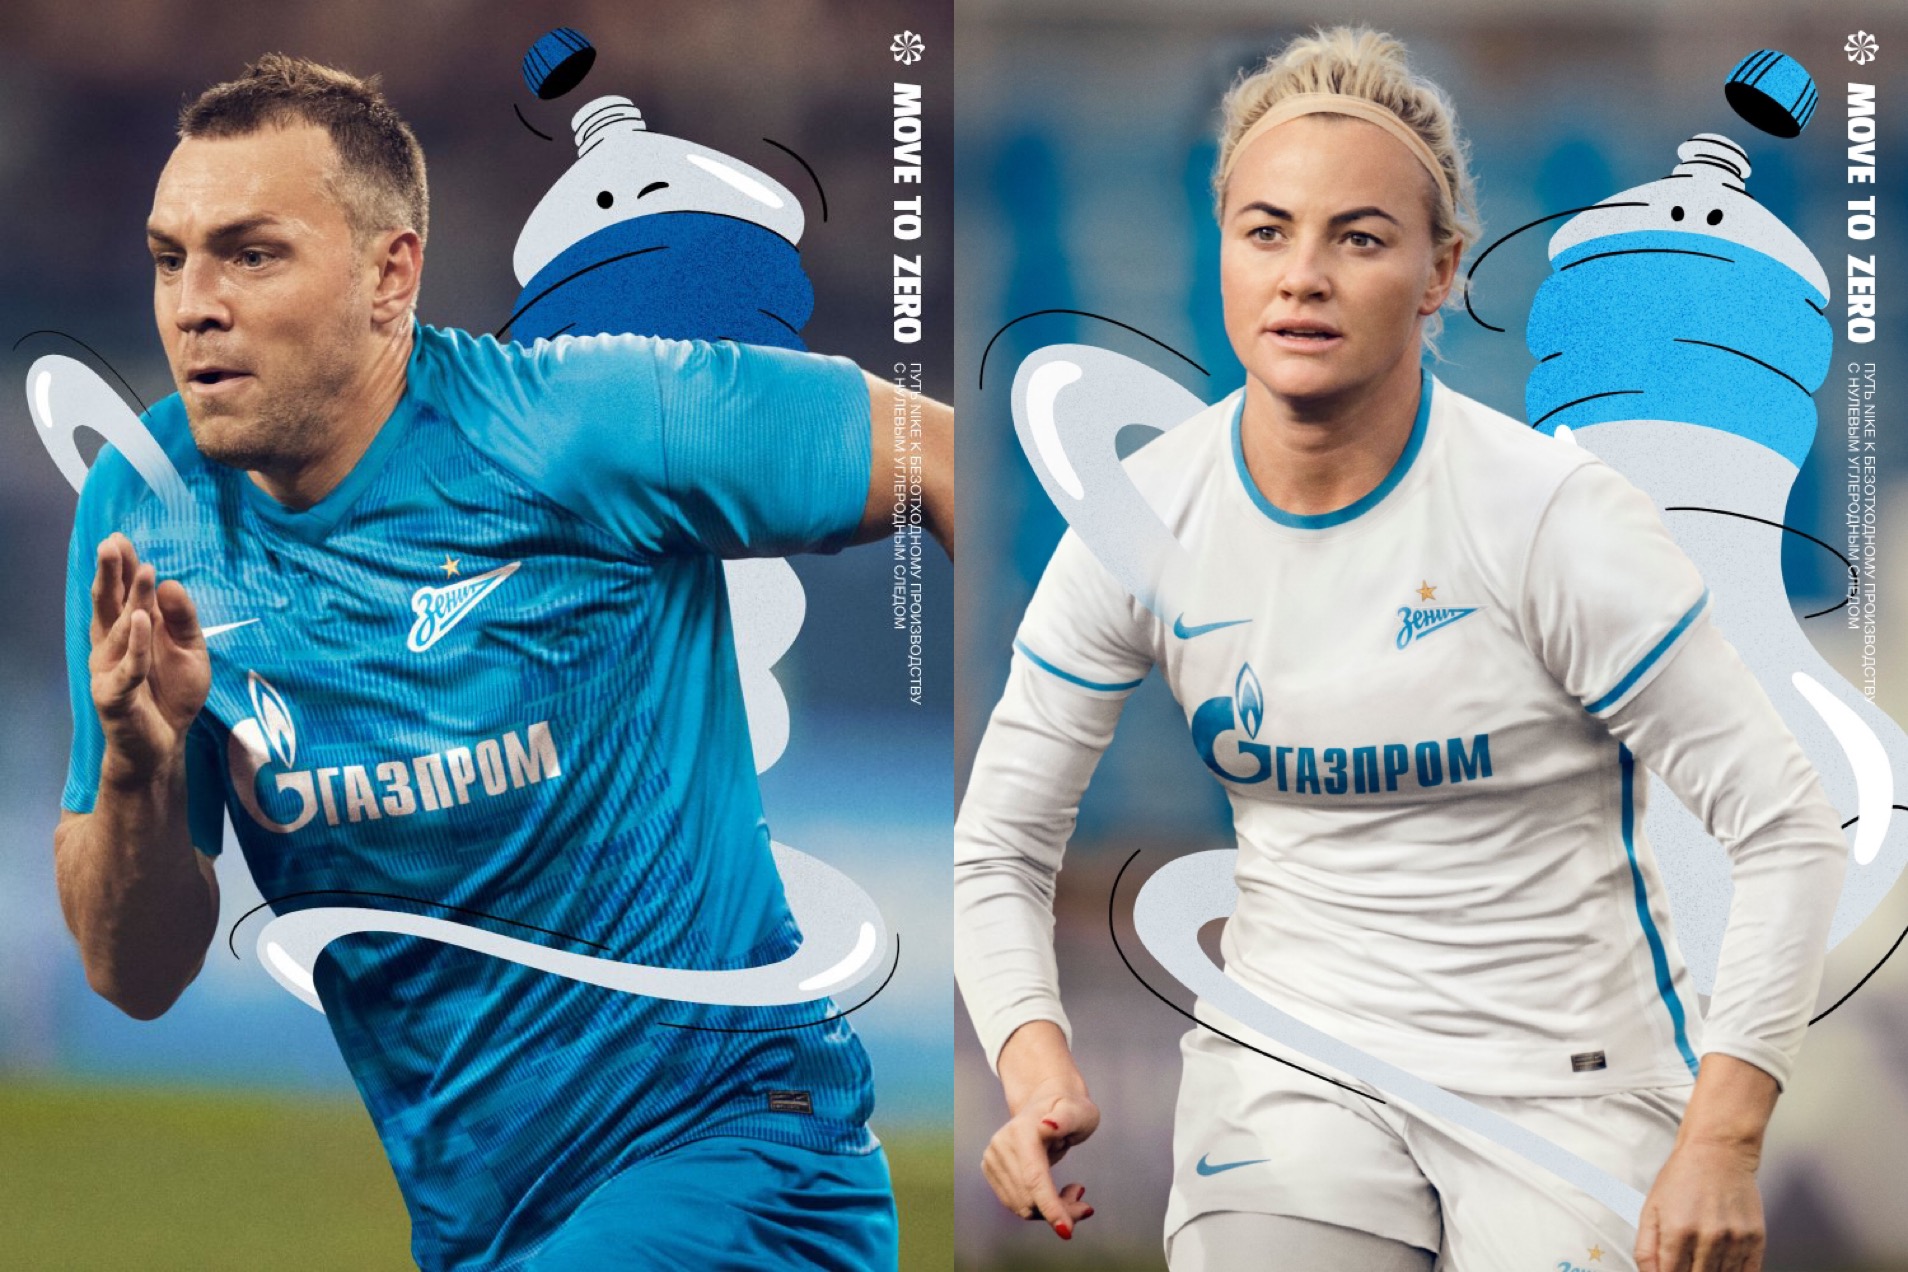 En kraft att räknas med! Nike och Zenit lanserar vårt nya matchställ för säsongen 2021/22